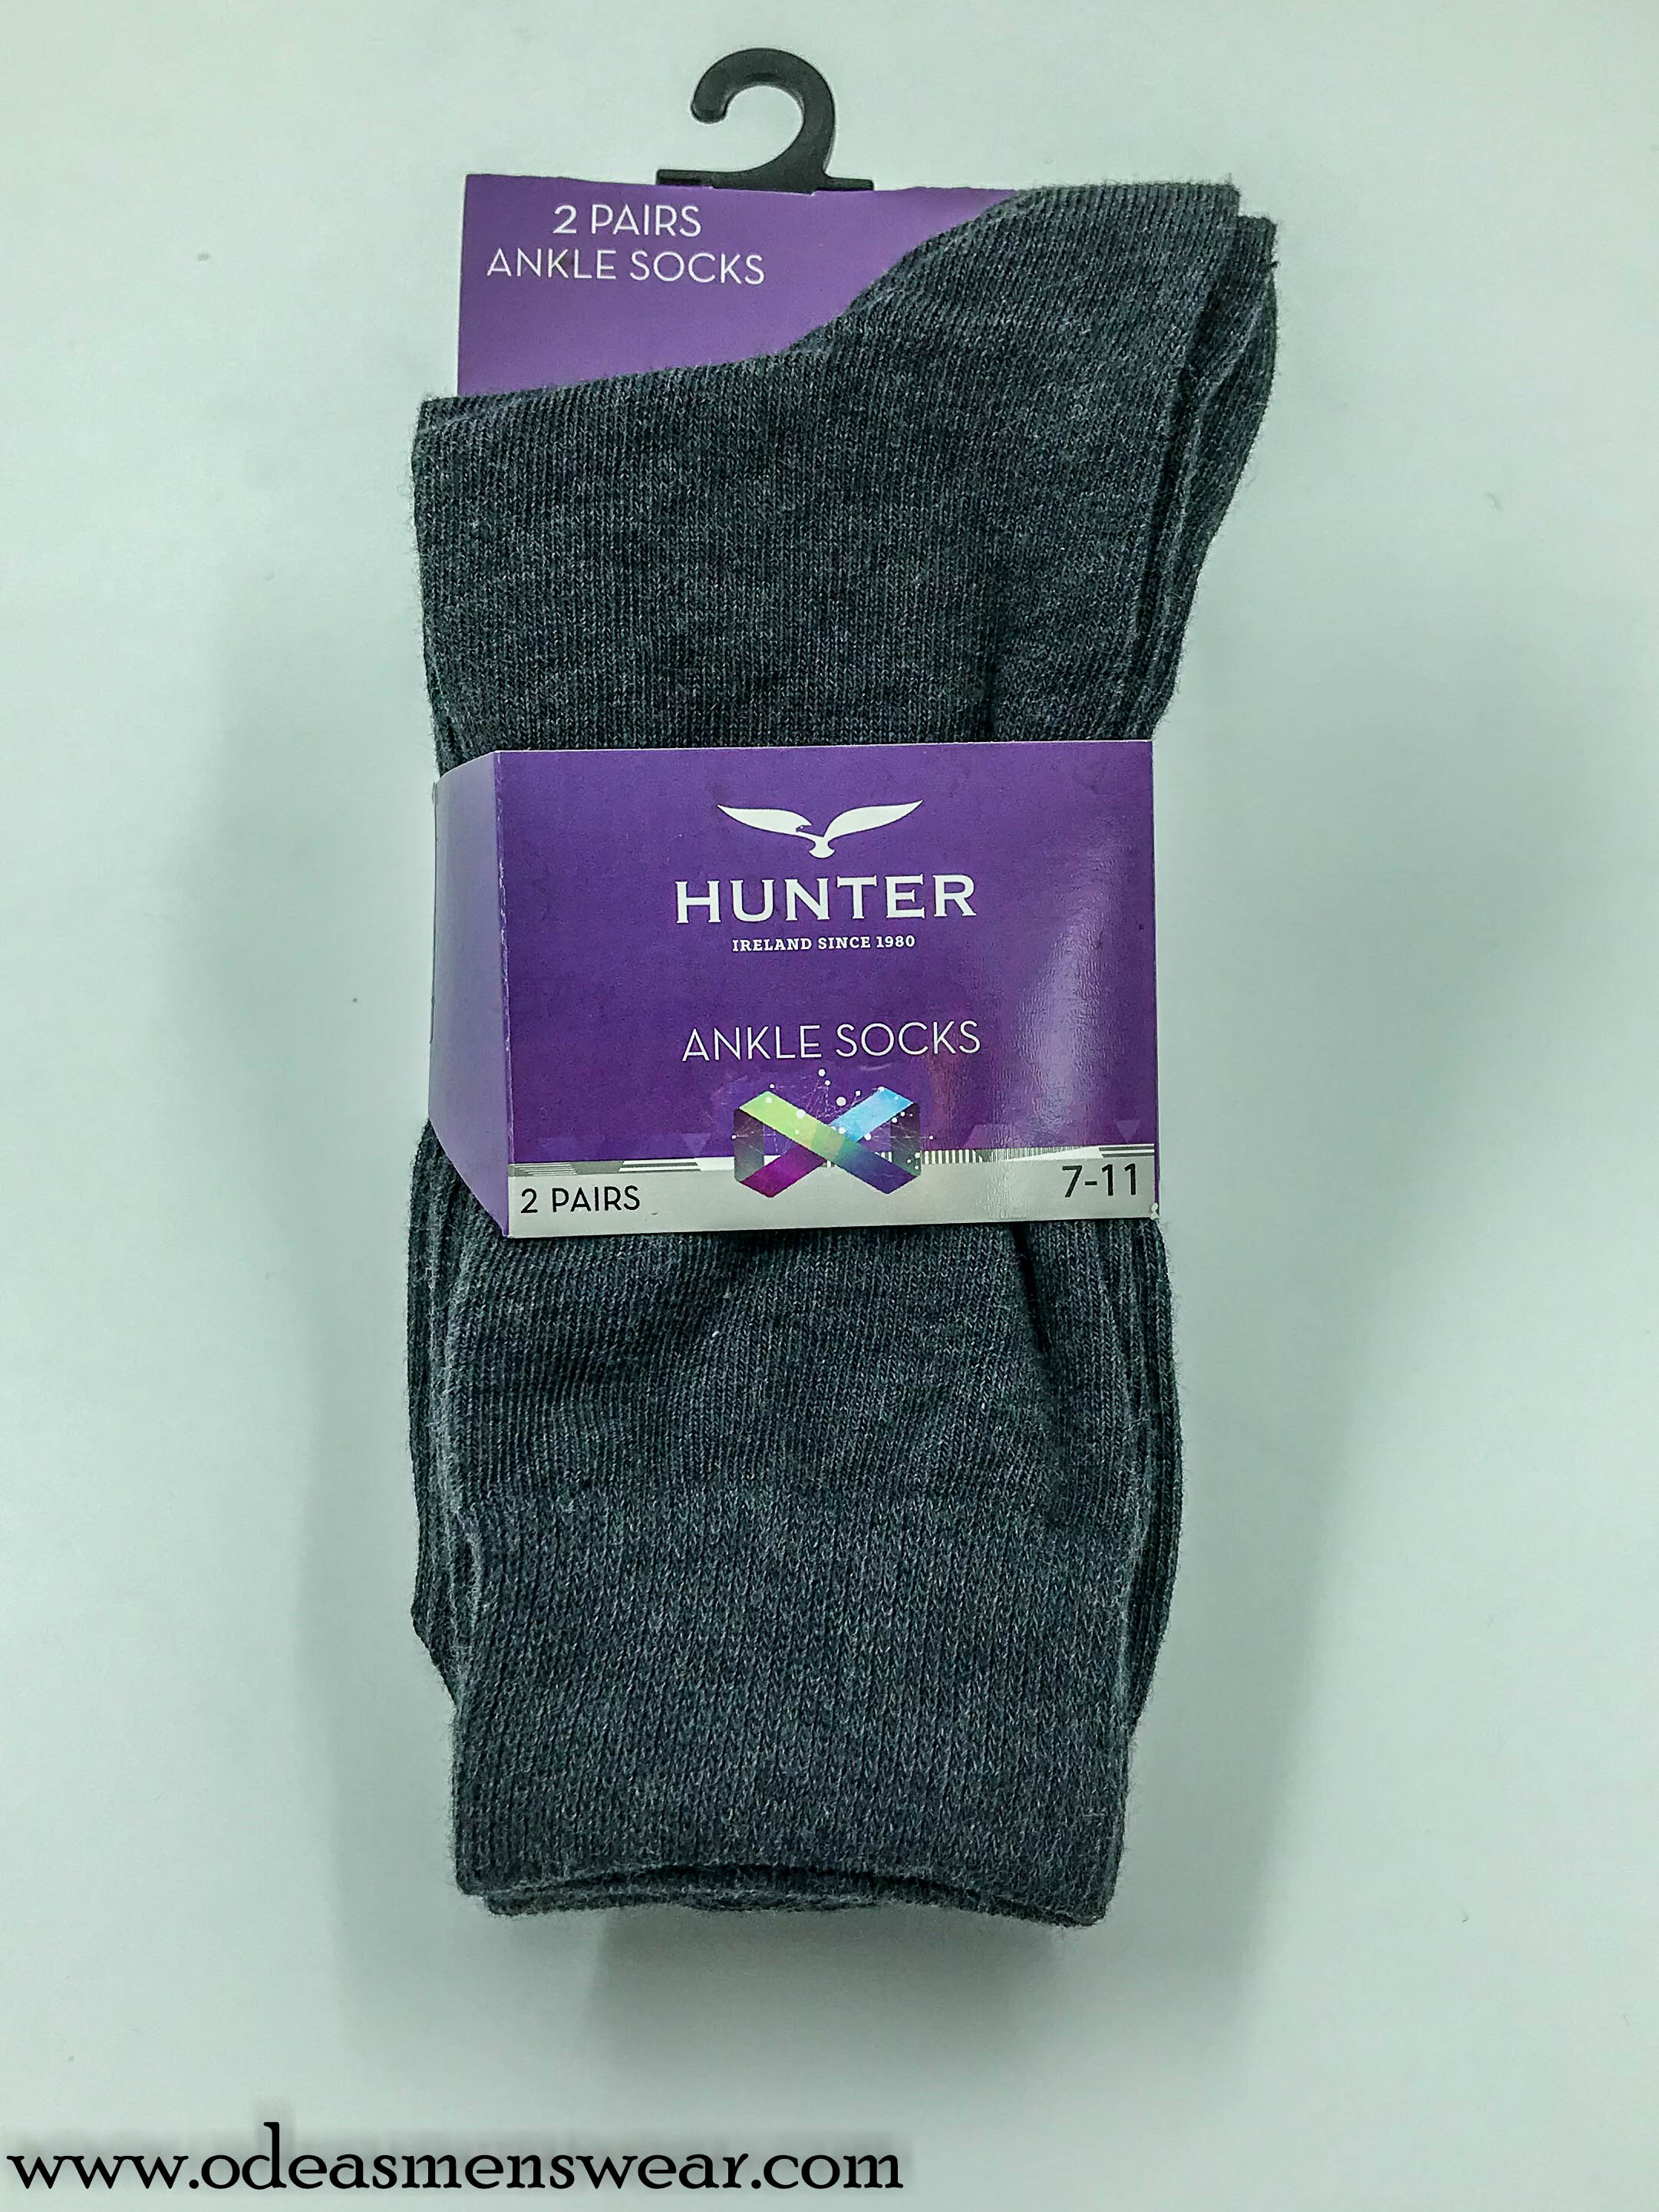 Hunter ... Ankle socks - Dark grey 2 pack (Abbey CBS / Hospital John the Baptist)